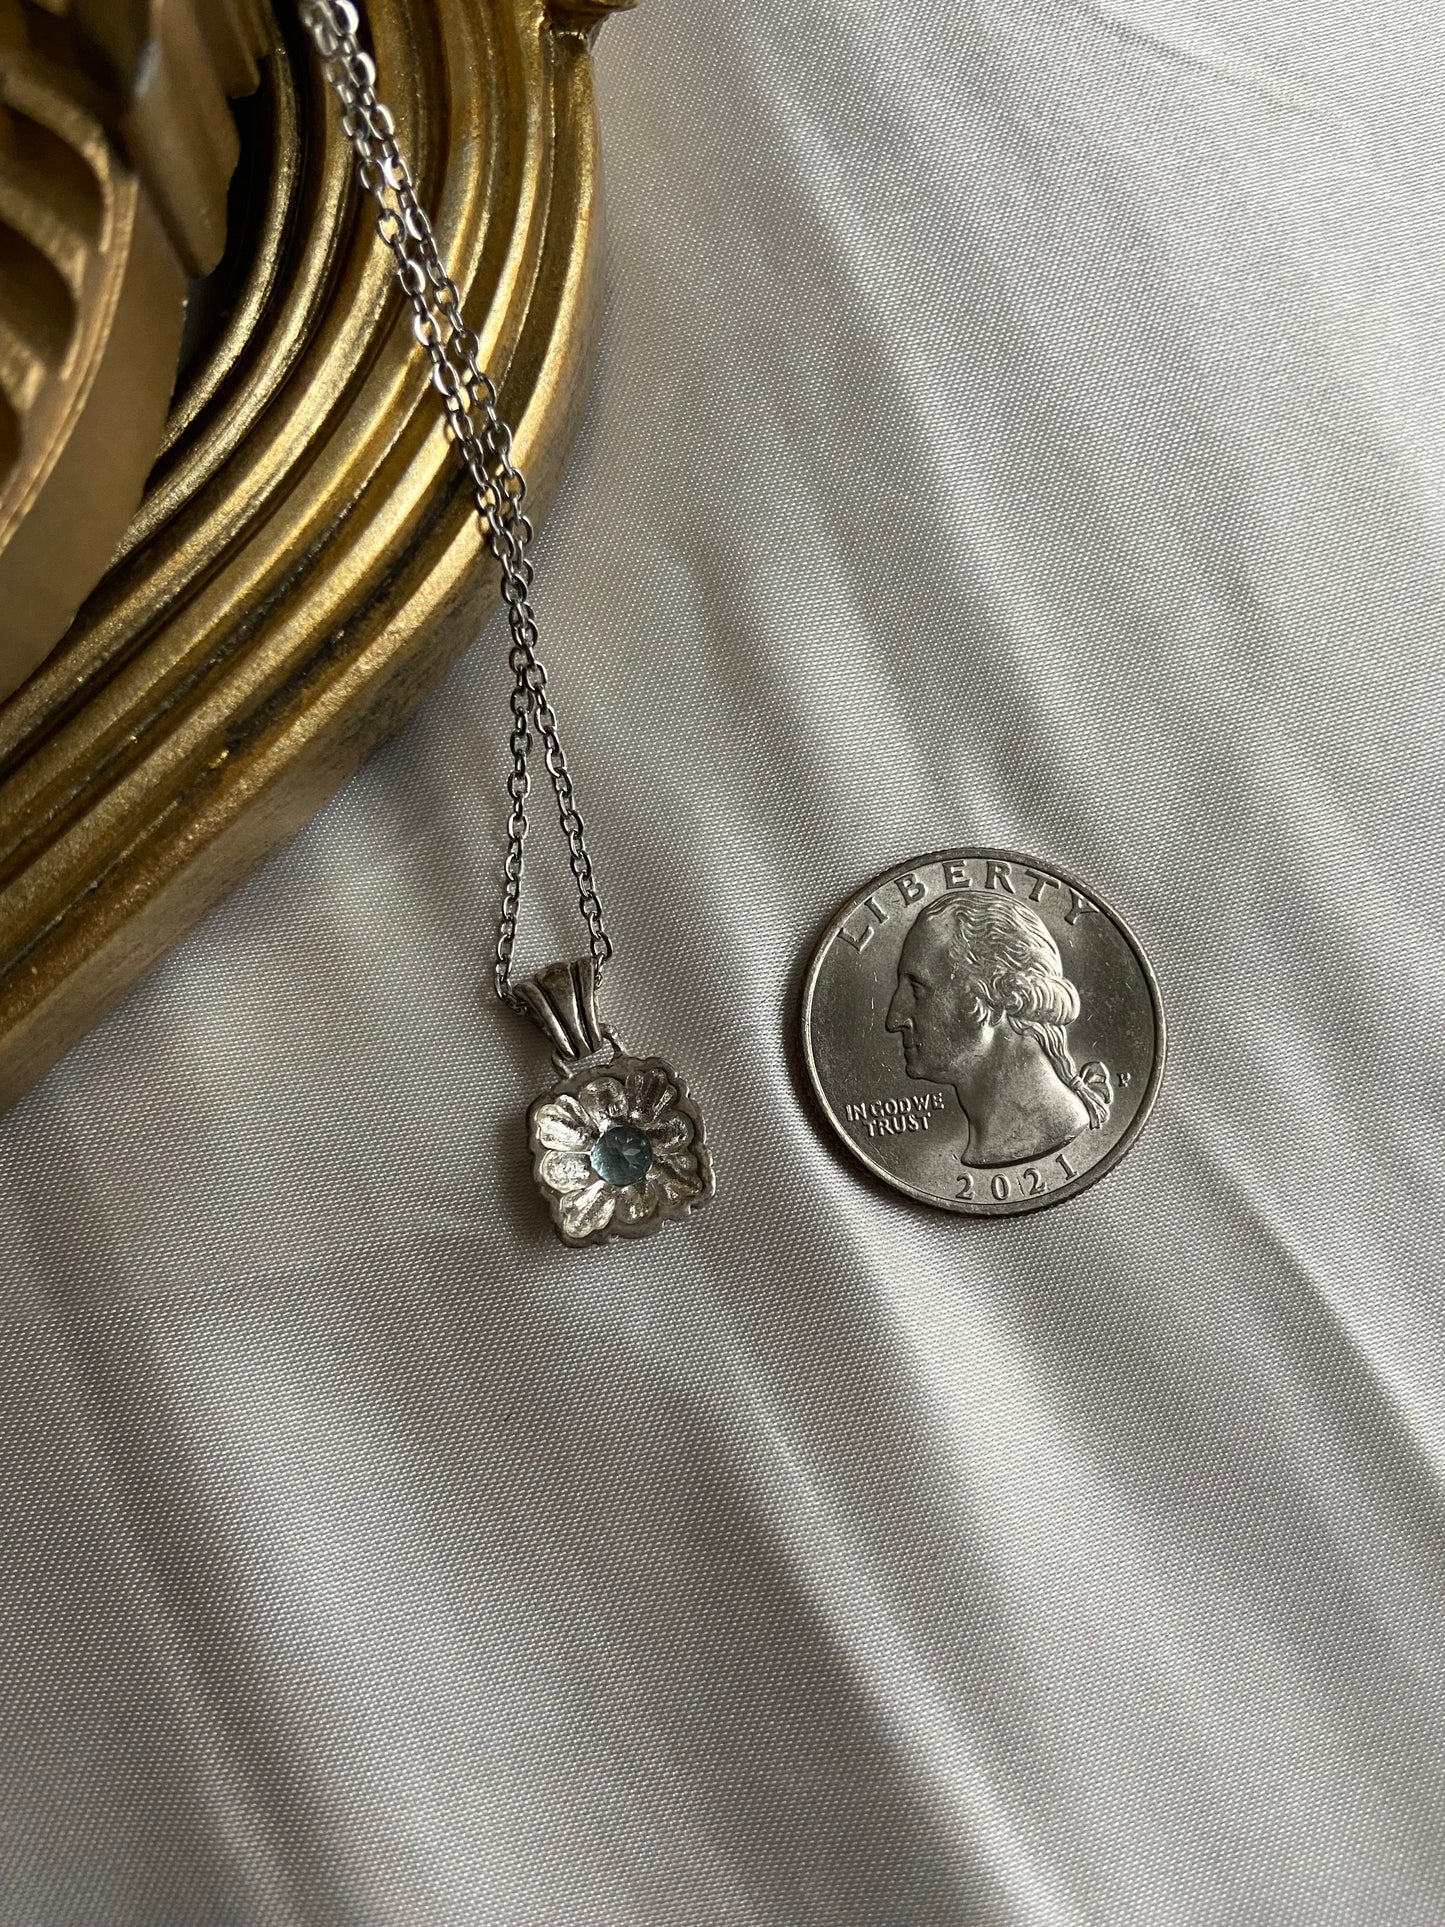 One-of-one | blue gem vintage necklace